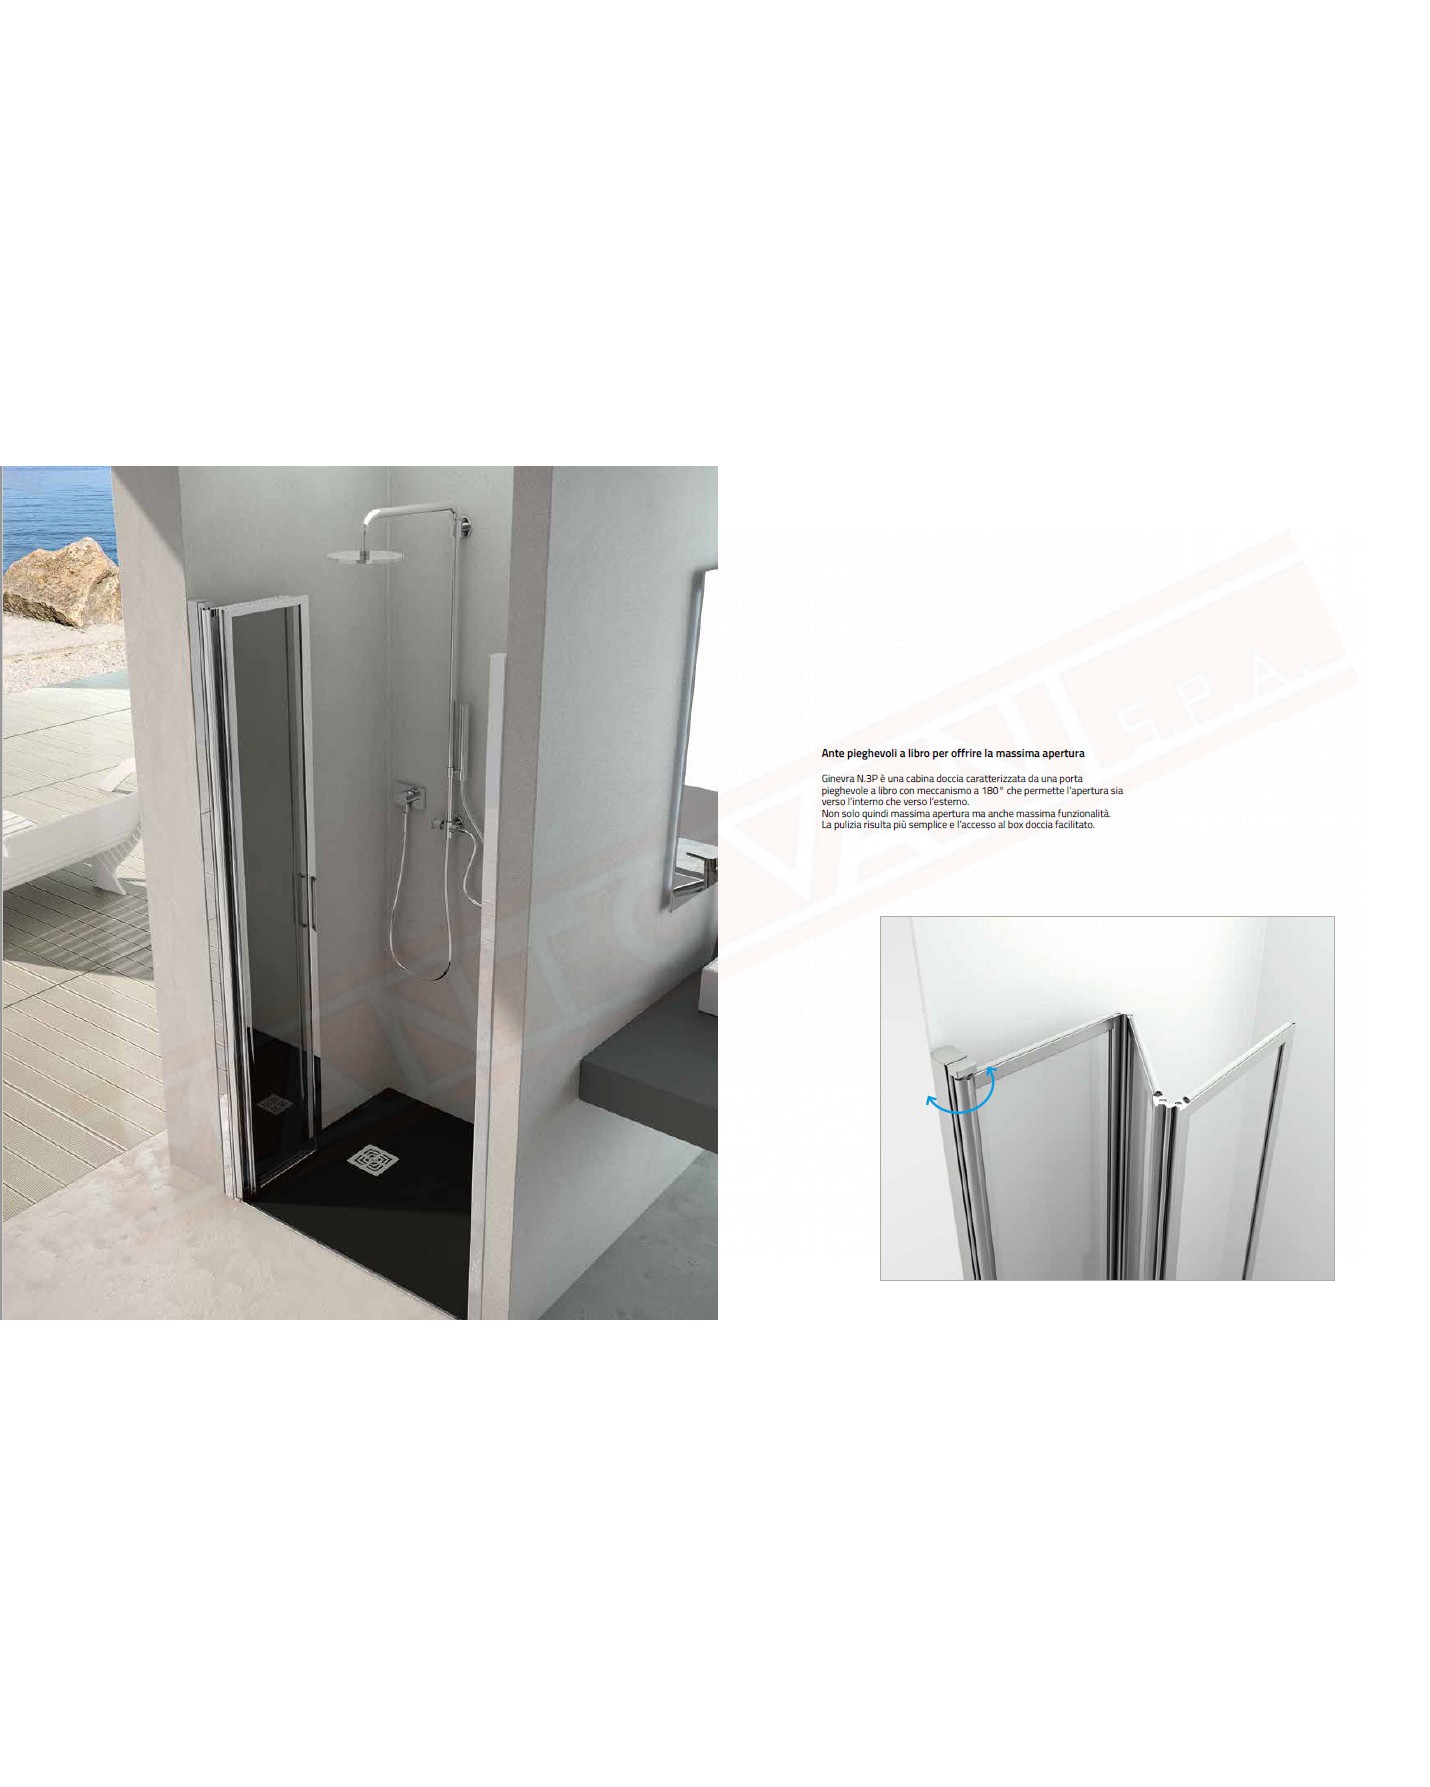 CSA box doccia Ginevra N 3P porta pieghevole doccia per nicchia con acrilico 4 mm misure da 66 a 100 h 185